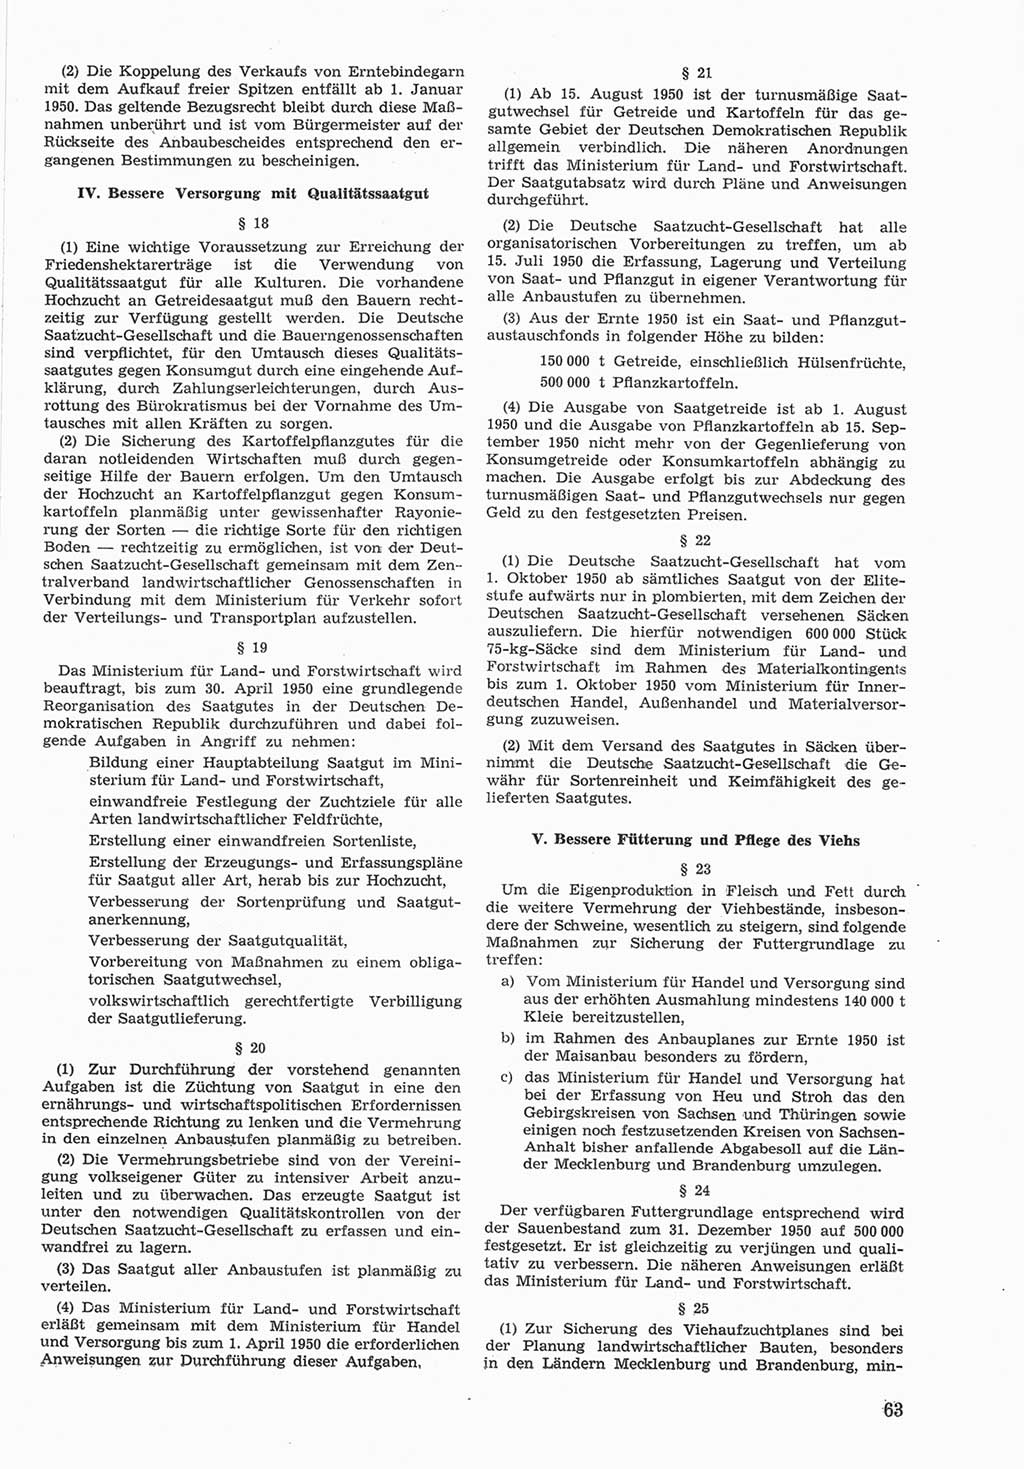 Provisorische Volkskammer (VK) der Deutschen Demokratischen Republik (DDR) 1949-1950, Dokument 663 (Prov. VK DDR 1949-1950, Dok. 663)